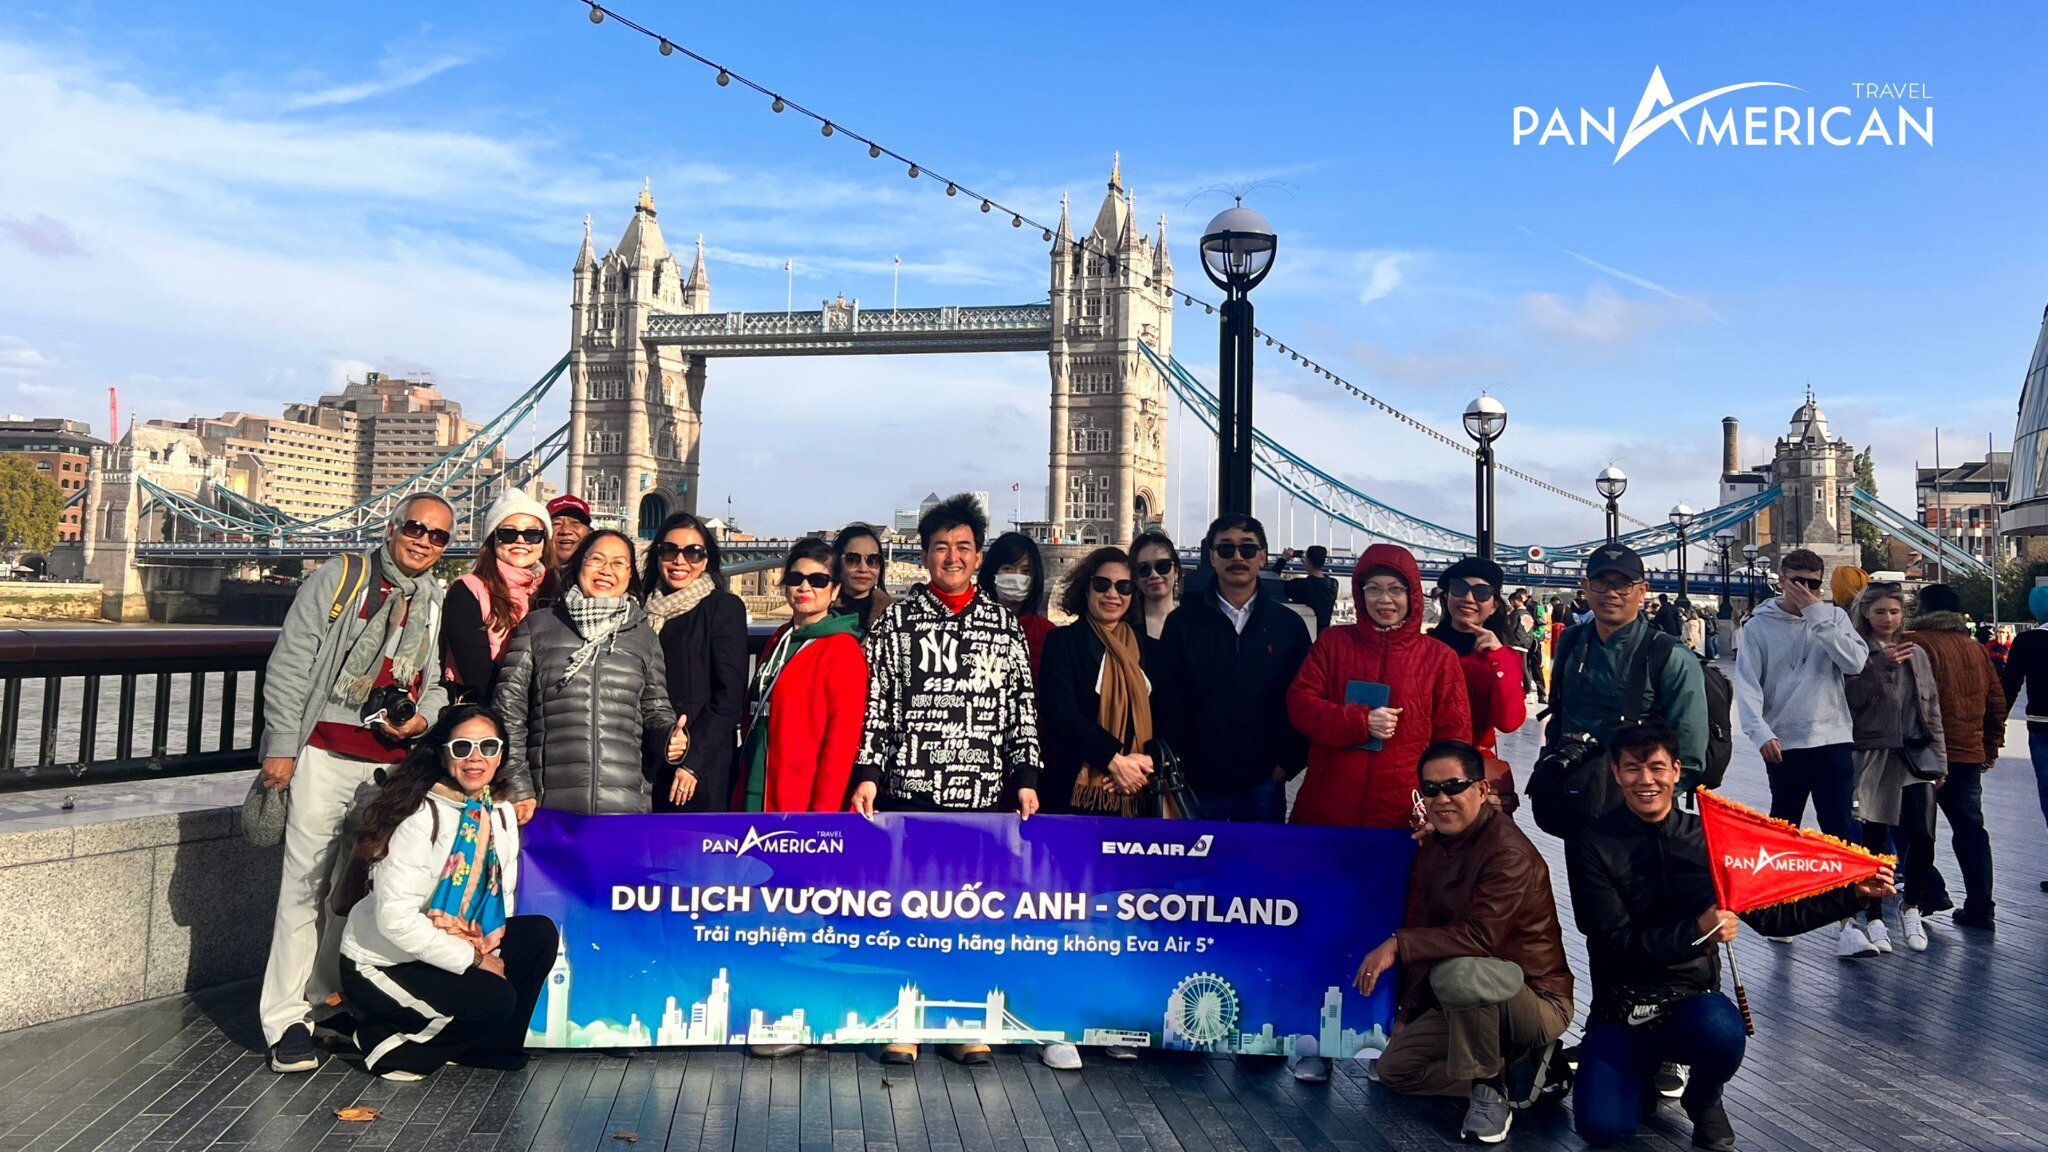 Khách của Pan American Travel trong chuyến du lịch Anh - Scotland